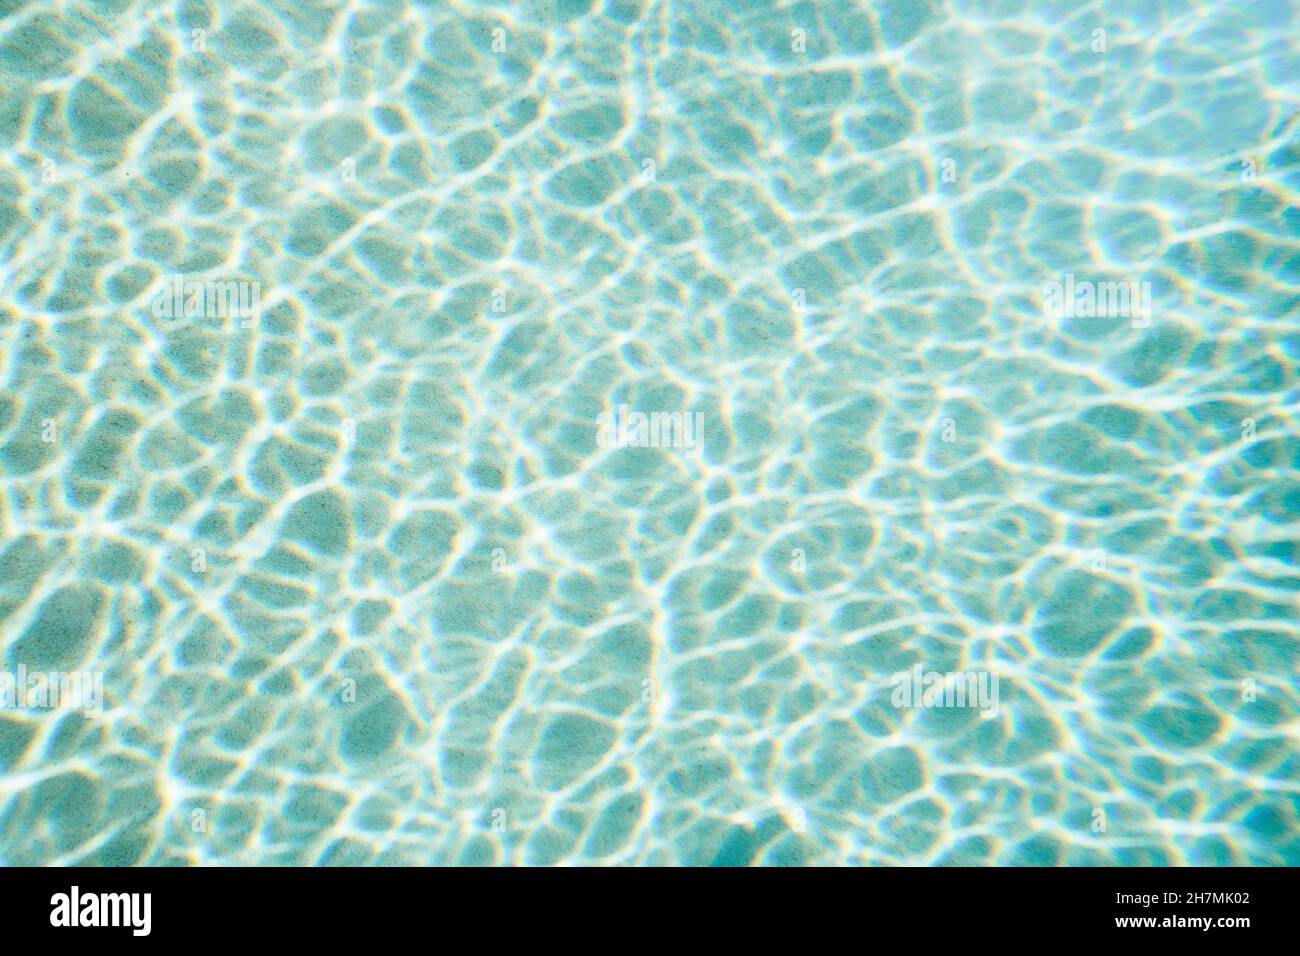 Motif de formation de réflexion sur l'eau de la piscine bleue Banque D'Images